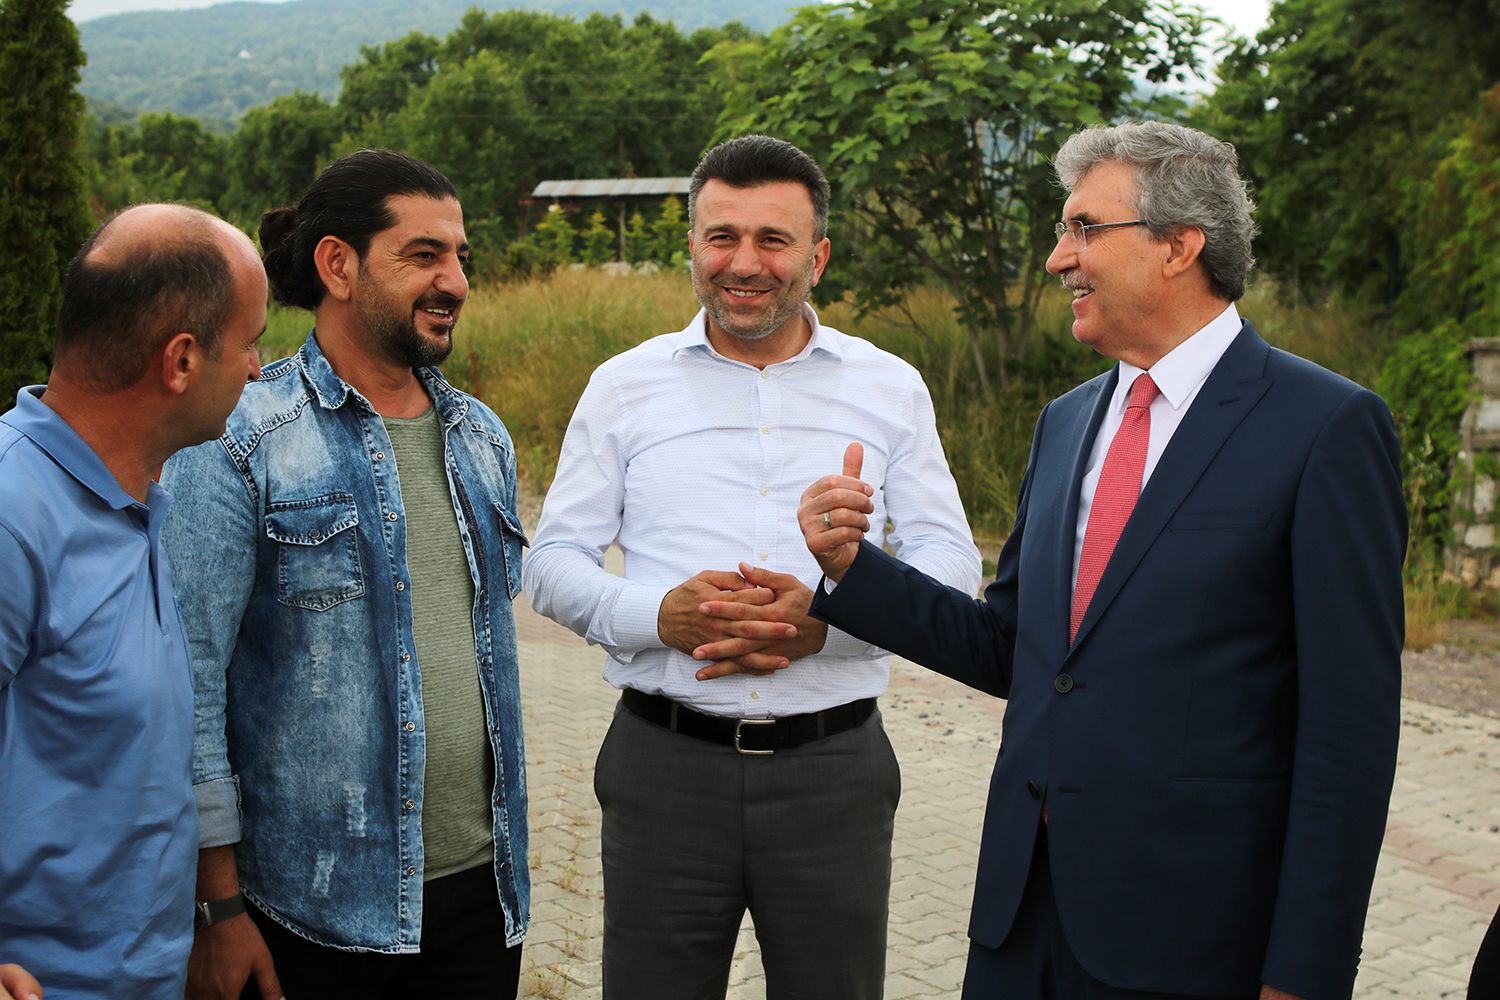 Büyükşehir Belediye Başkanı Ekrem Yüce: “Sakarya süs bitkiciliğinde örnek olmaya devam edecek”